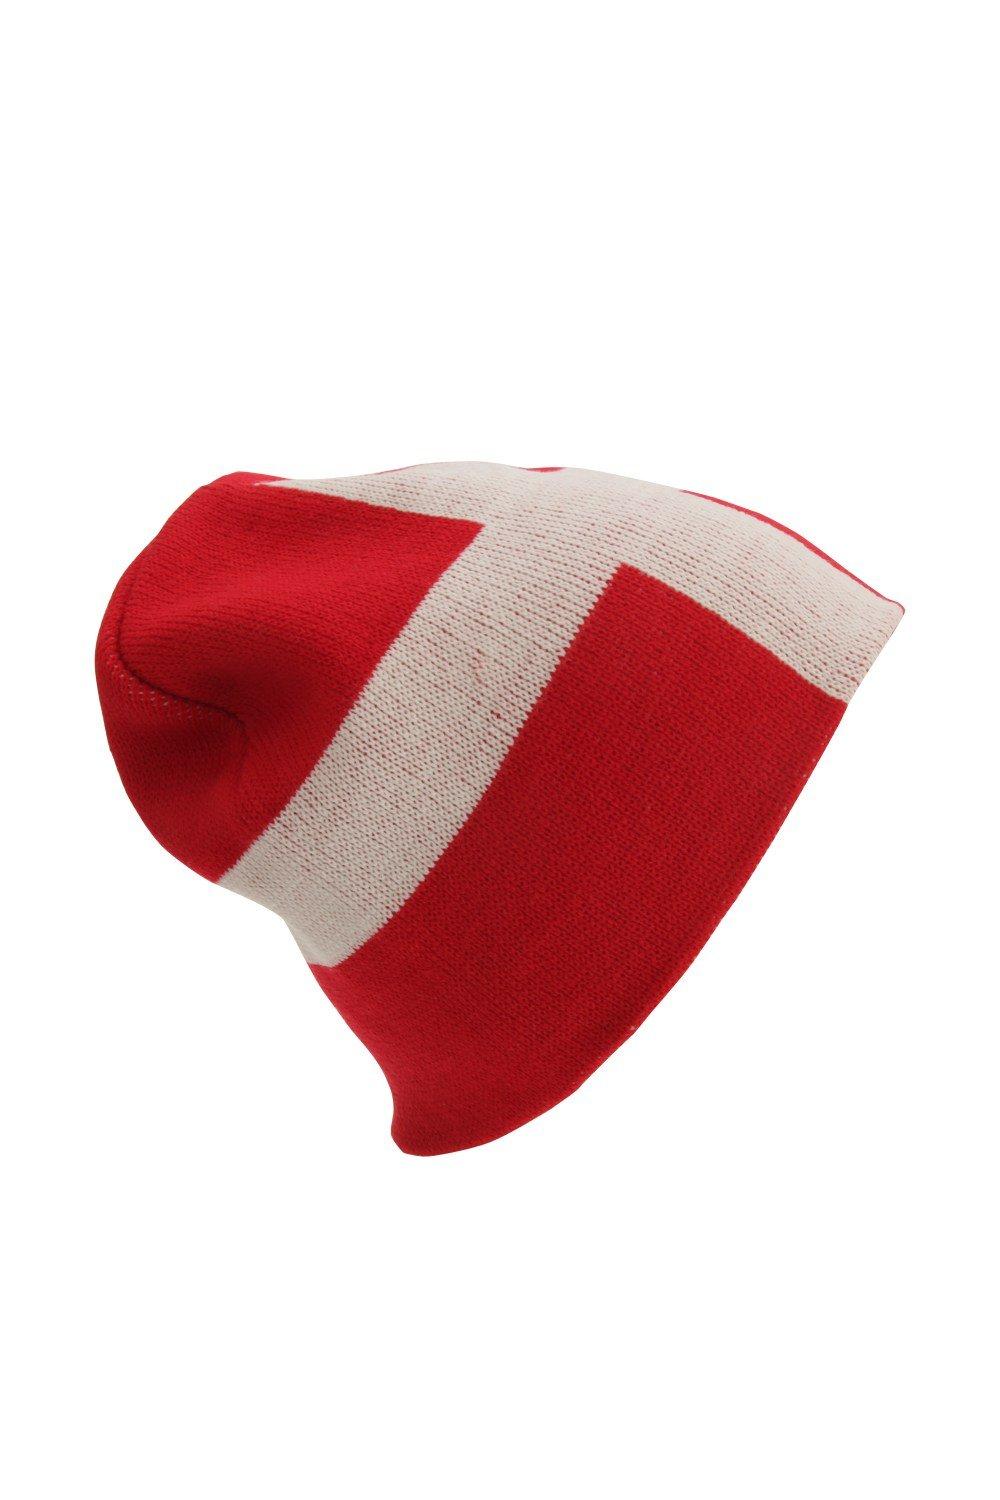 Зимняя шапка с флагом Дании Universal Textiles, красный шапка бини 100%акрил размер свободный розовый